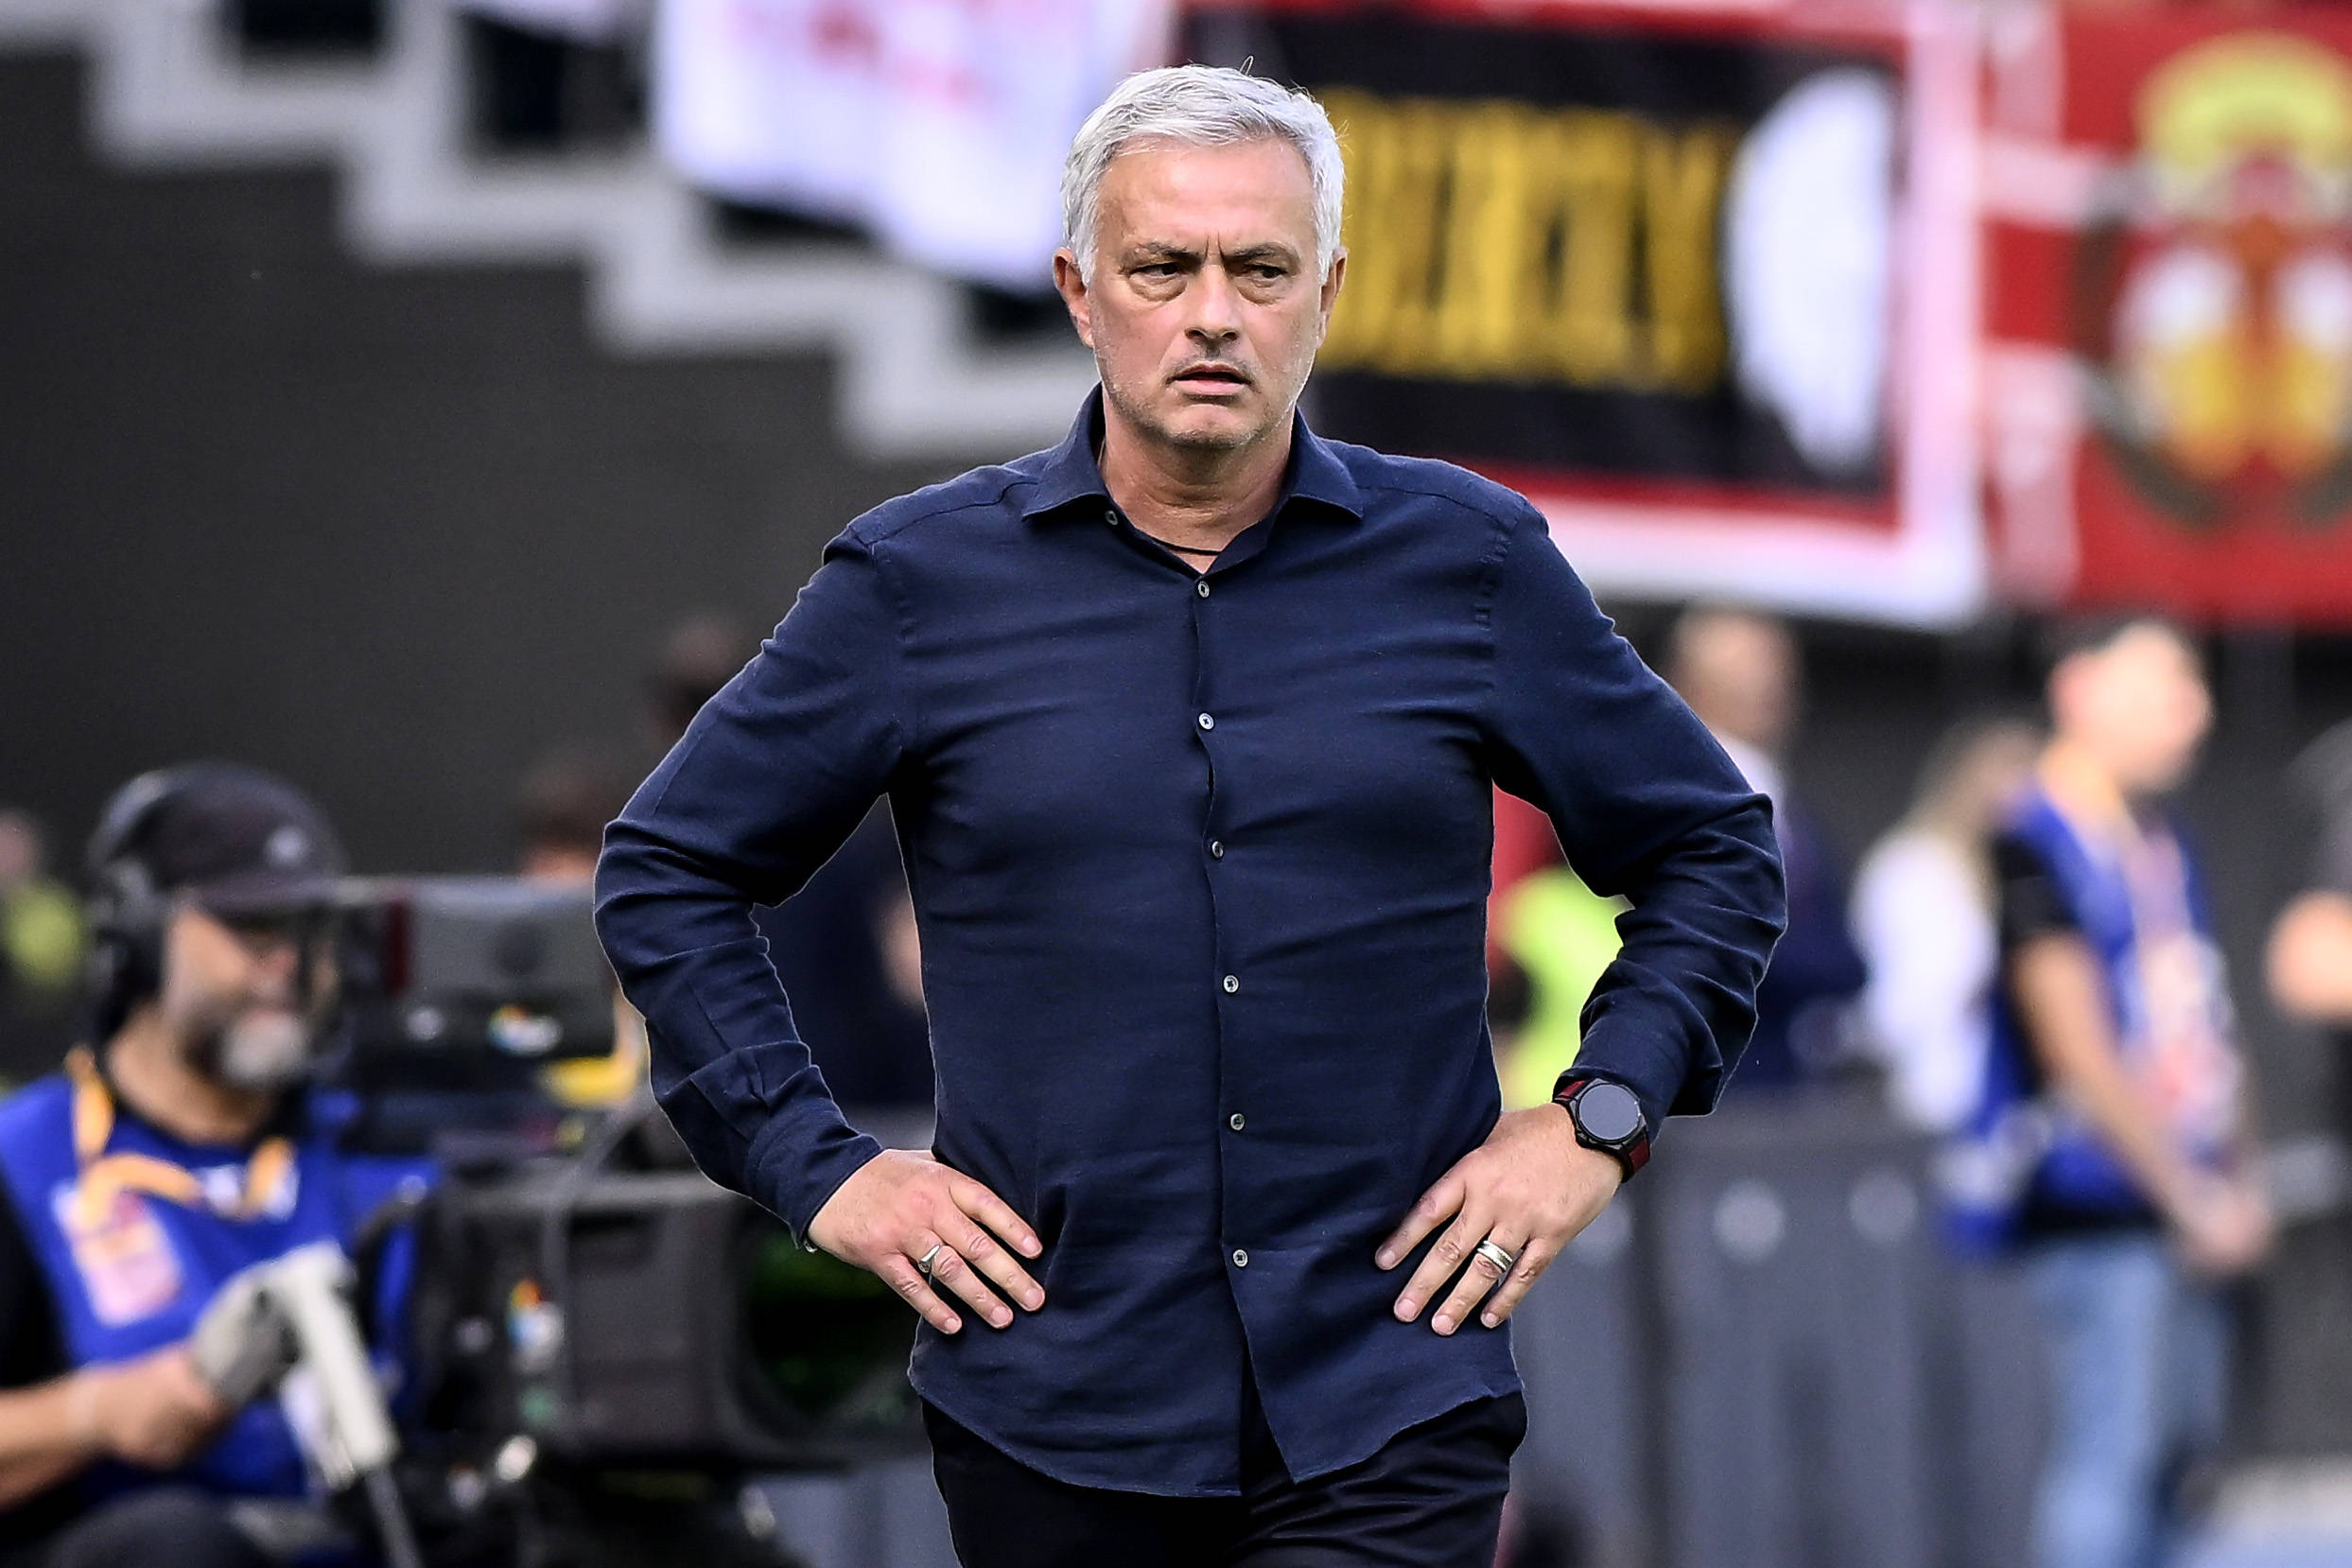 Jose Mourinho ist einer der erfolgreichsten Fußball-Trainer der Geschichte.